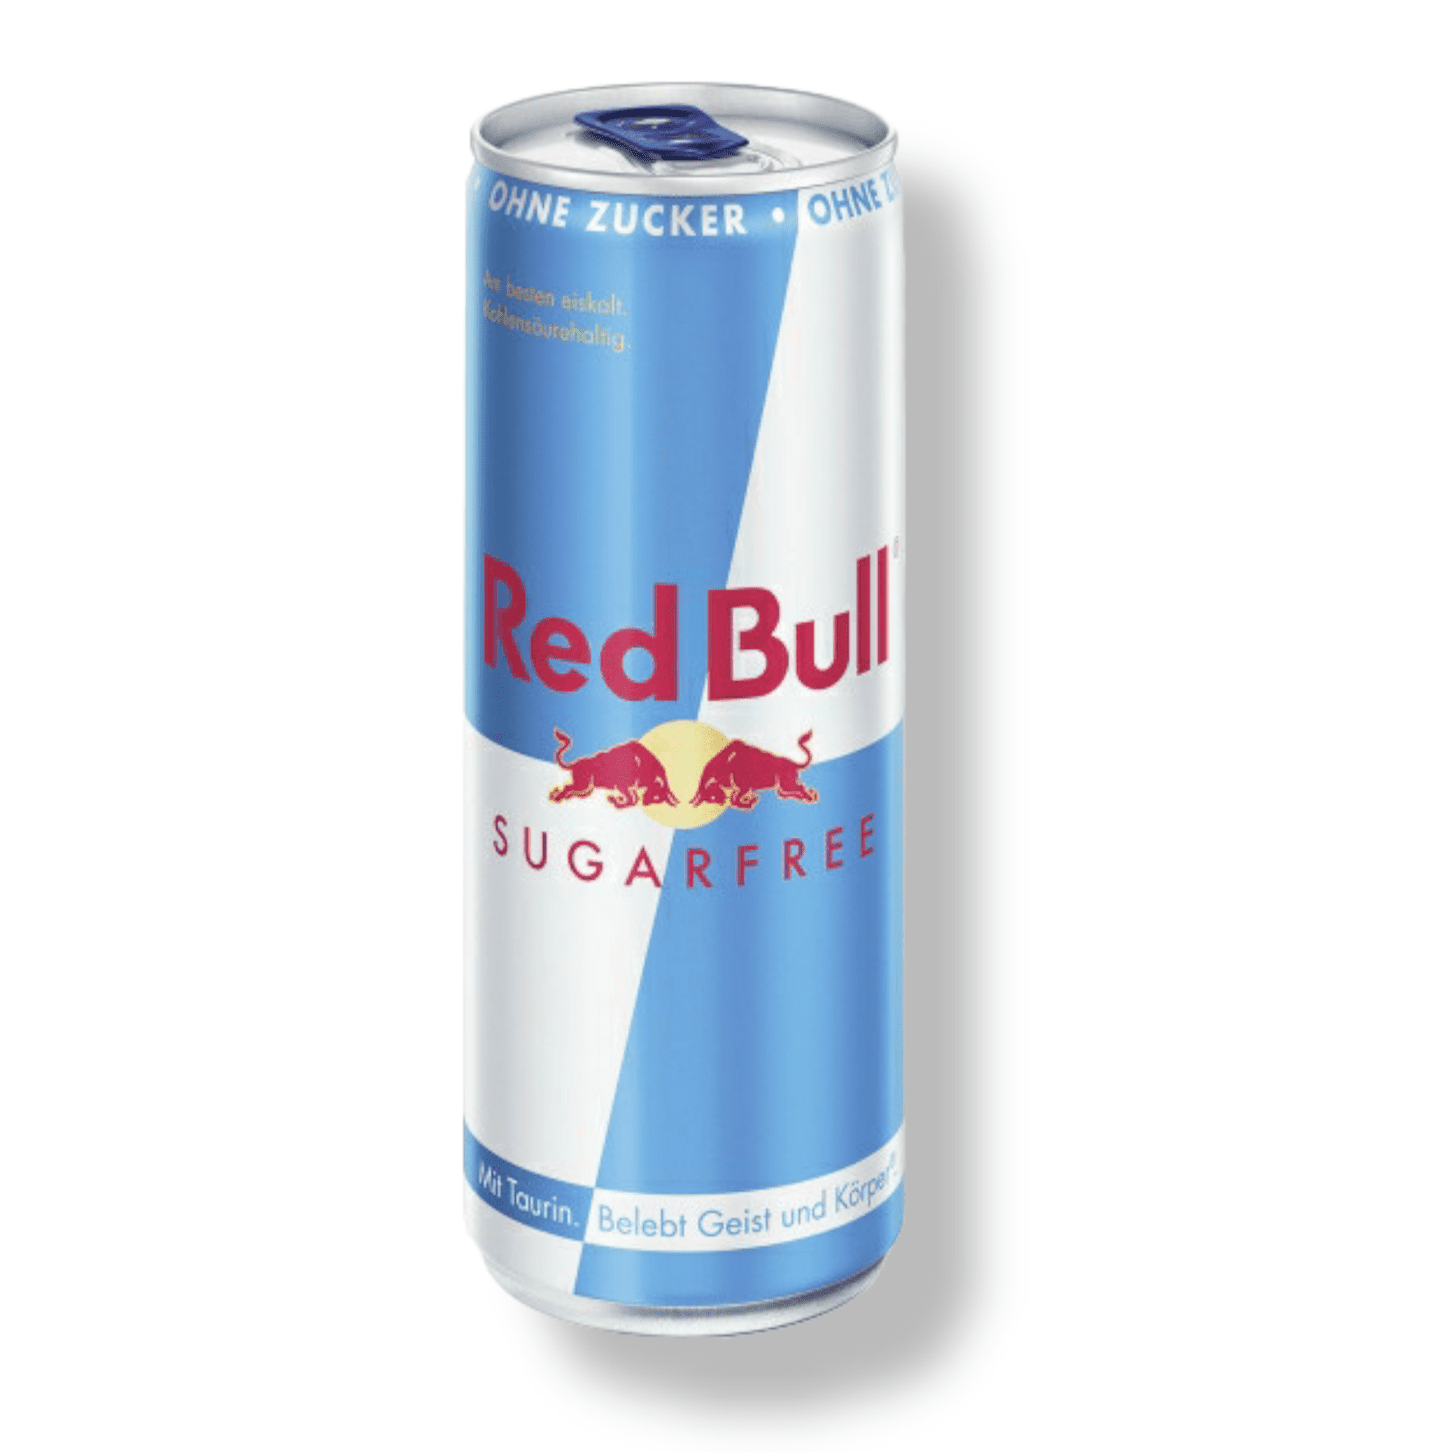 Red Bull Sugarfree - Kein Zucker nur Flügel